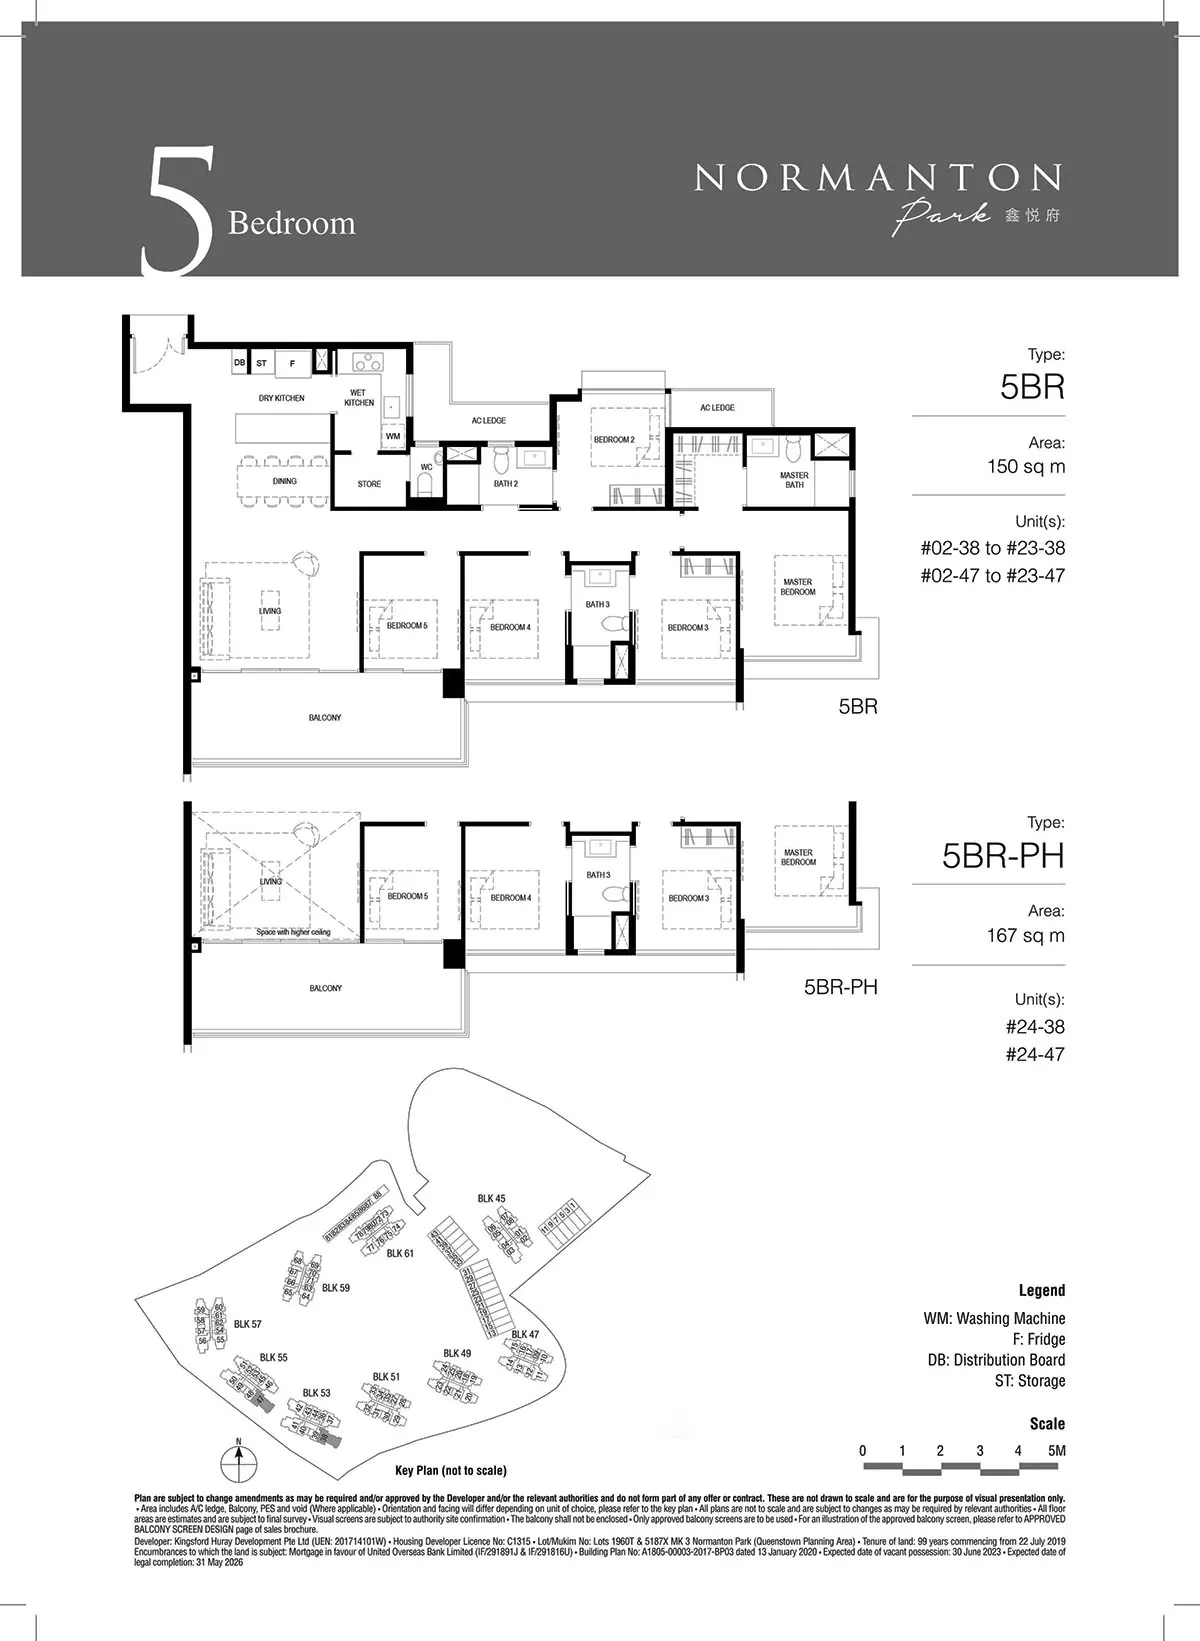 5 bedroom Floor Plan